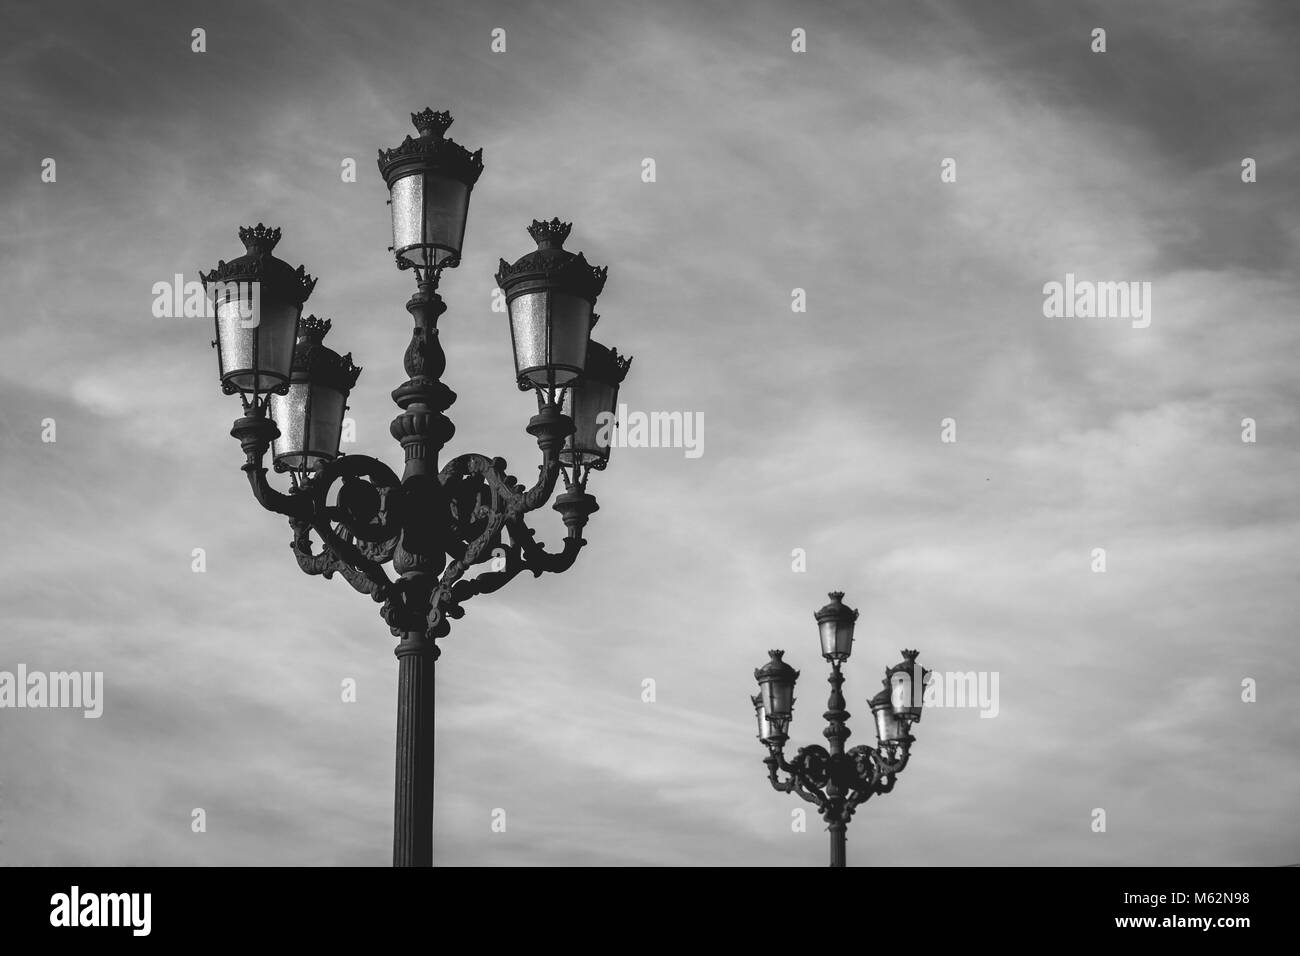 Lampe ornés populaires posts sur fond de ciel nuageux dans le nord de l'Espagne, la ville de Bilbao Banque D'Images